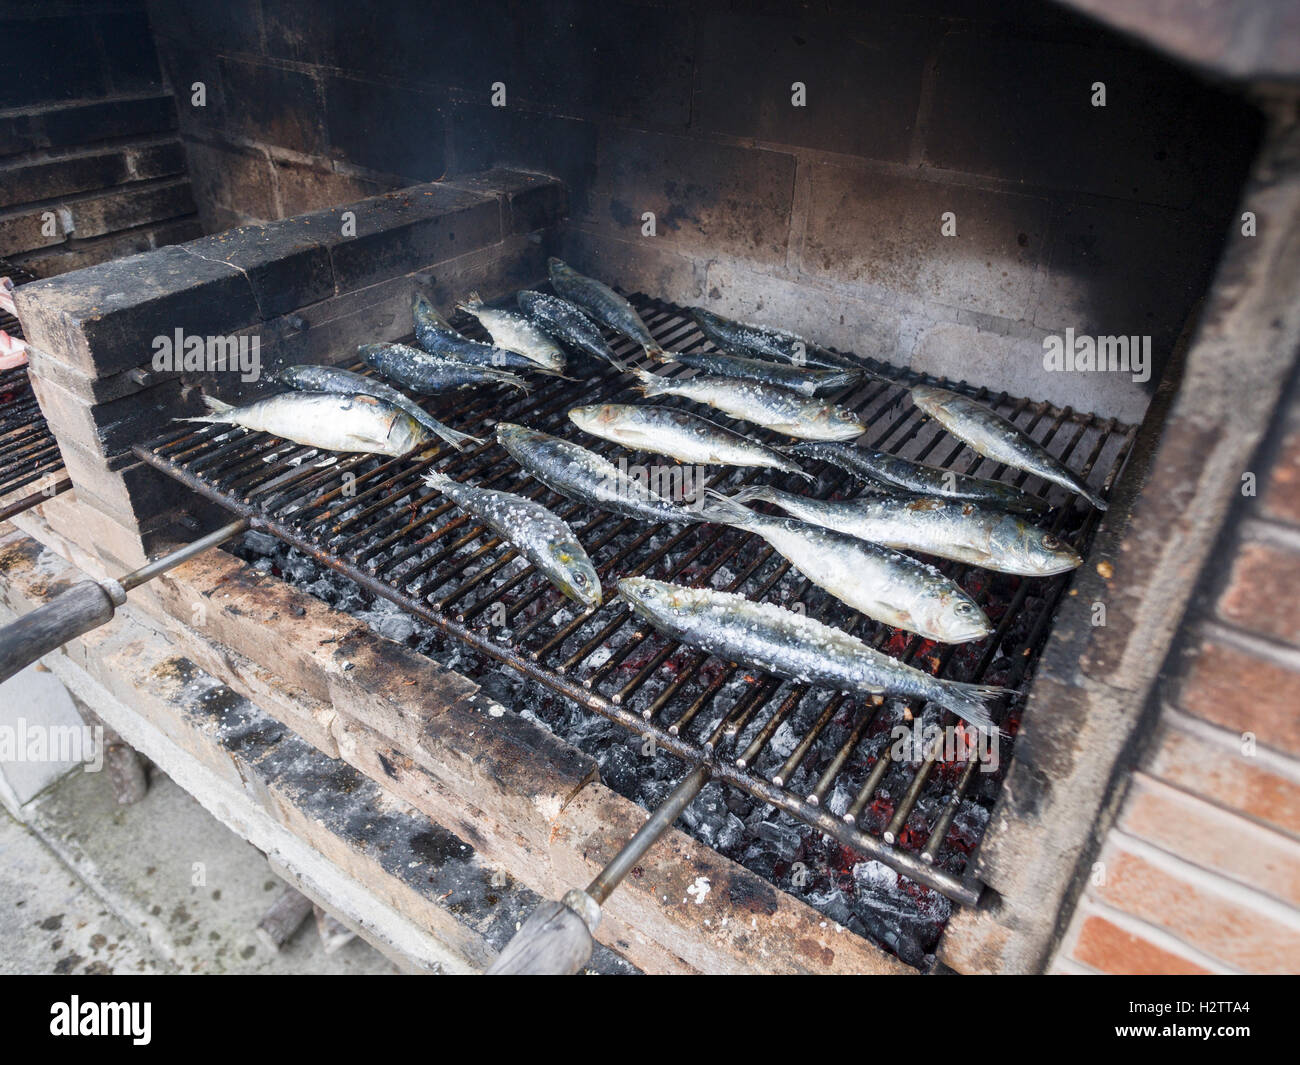 Les sardines salées grillées sur un barbecue des. De gros blocs de sel de roche de la saveur du poisson frais juste après il est placé sur un gril chaud Banque D'Images